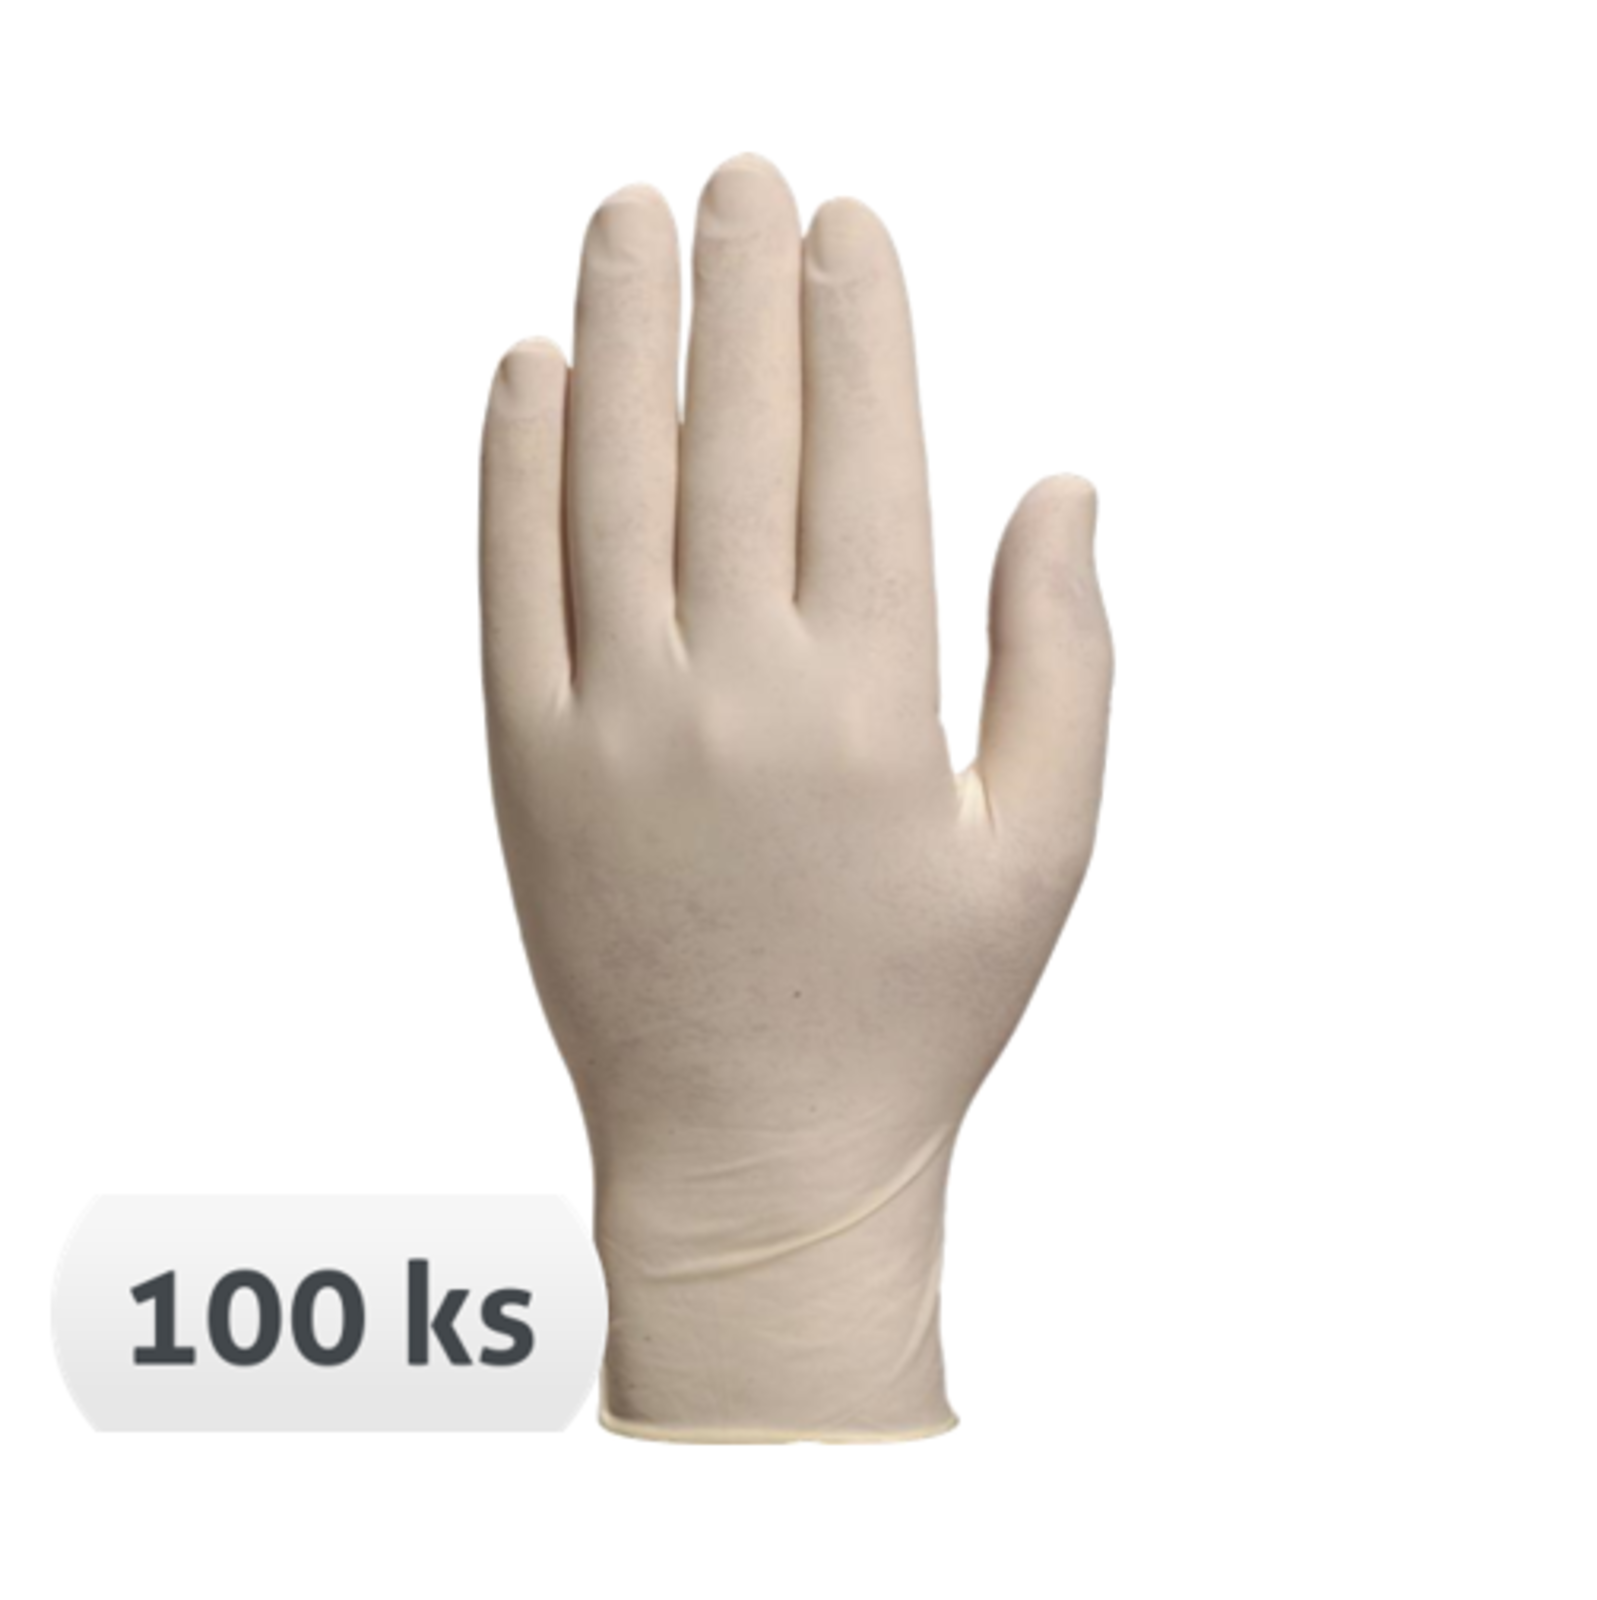 Jednorazové latexové rukavice Veniclean V1340 nepudrované 100 ks - veľkosť: 7/8